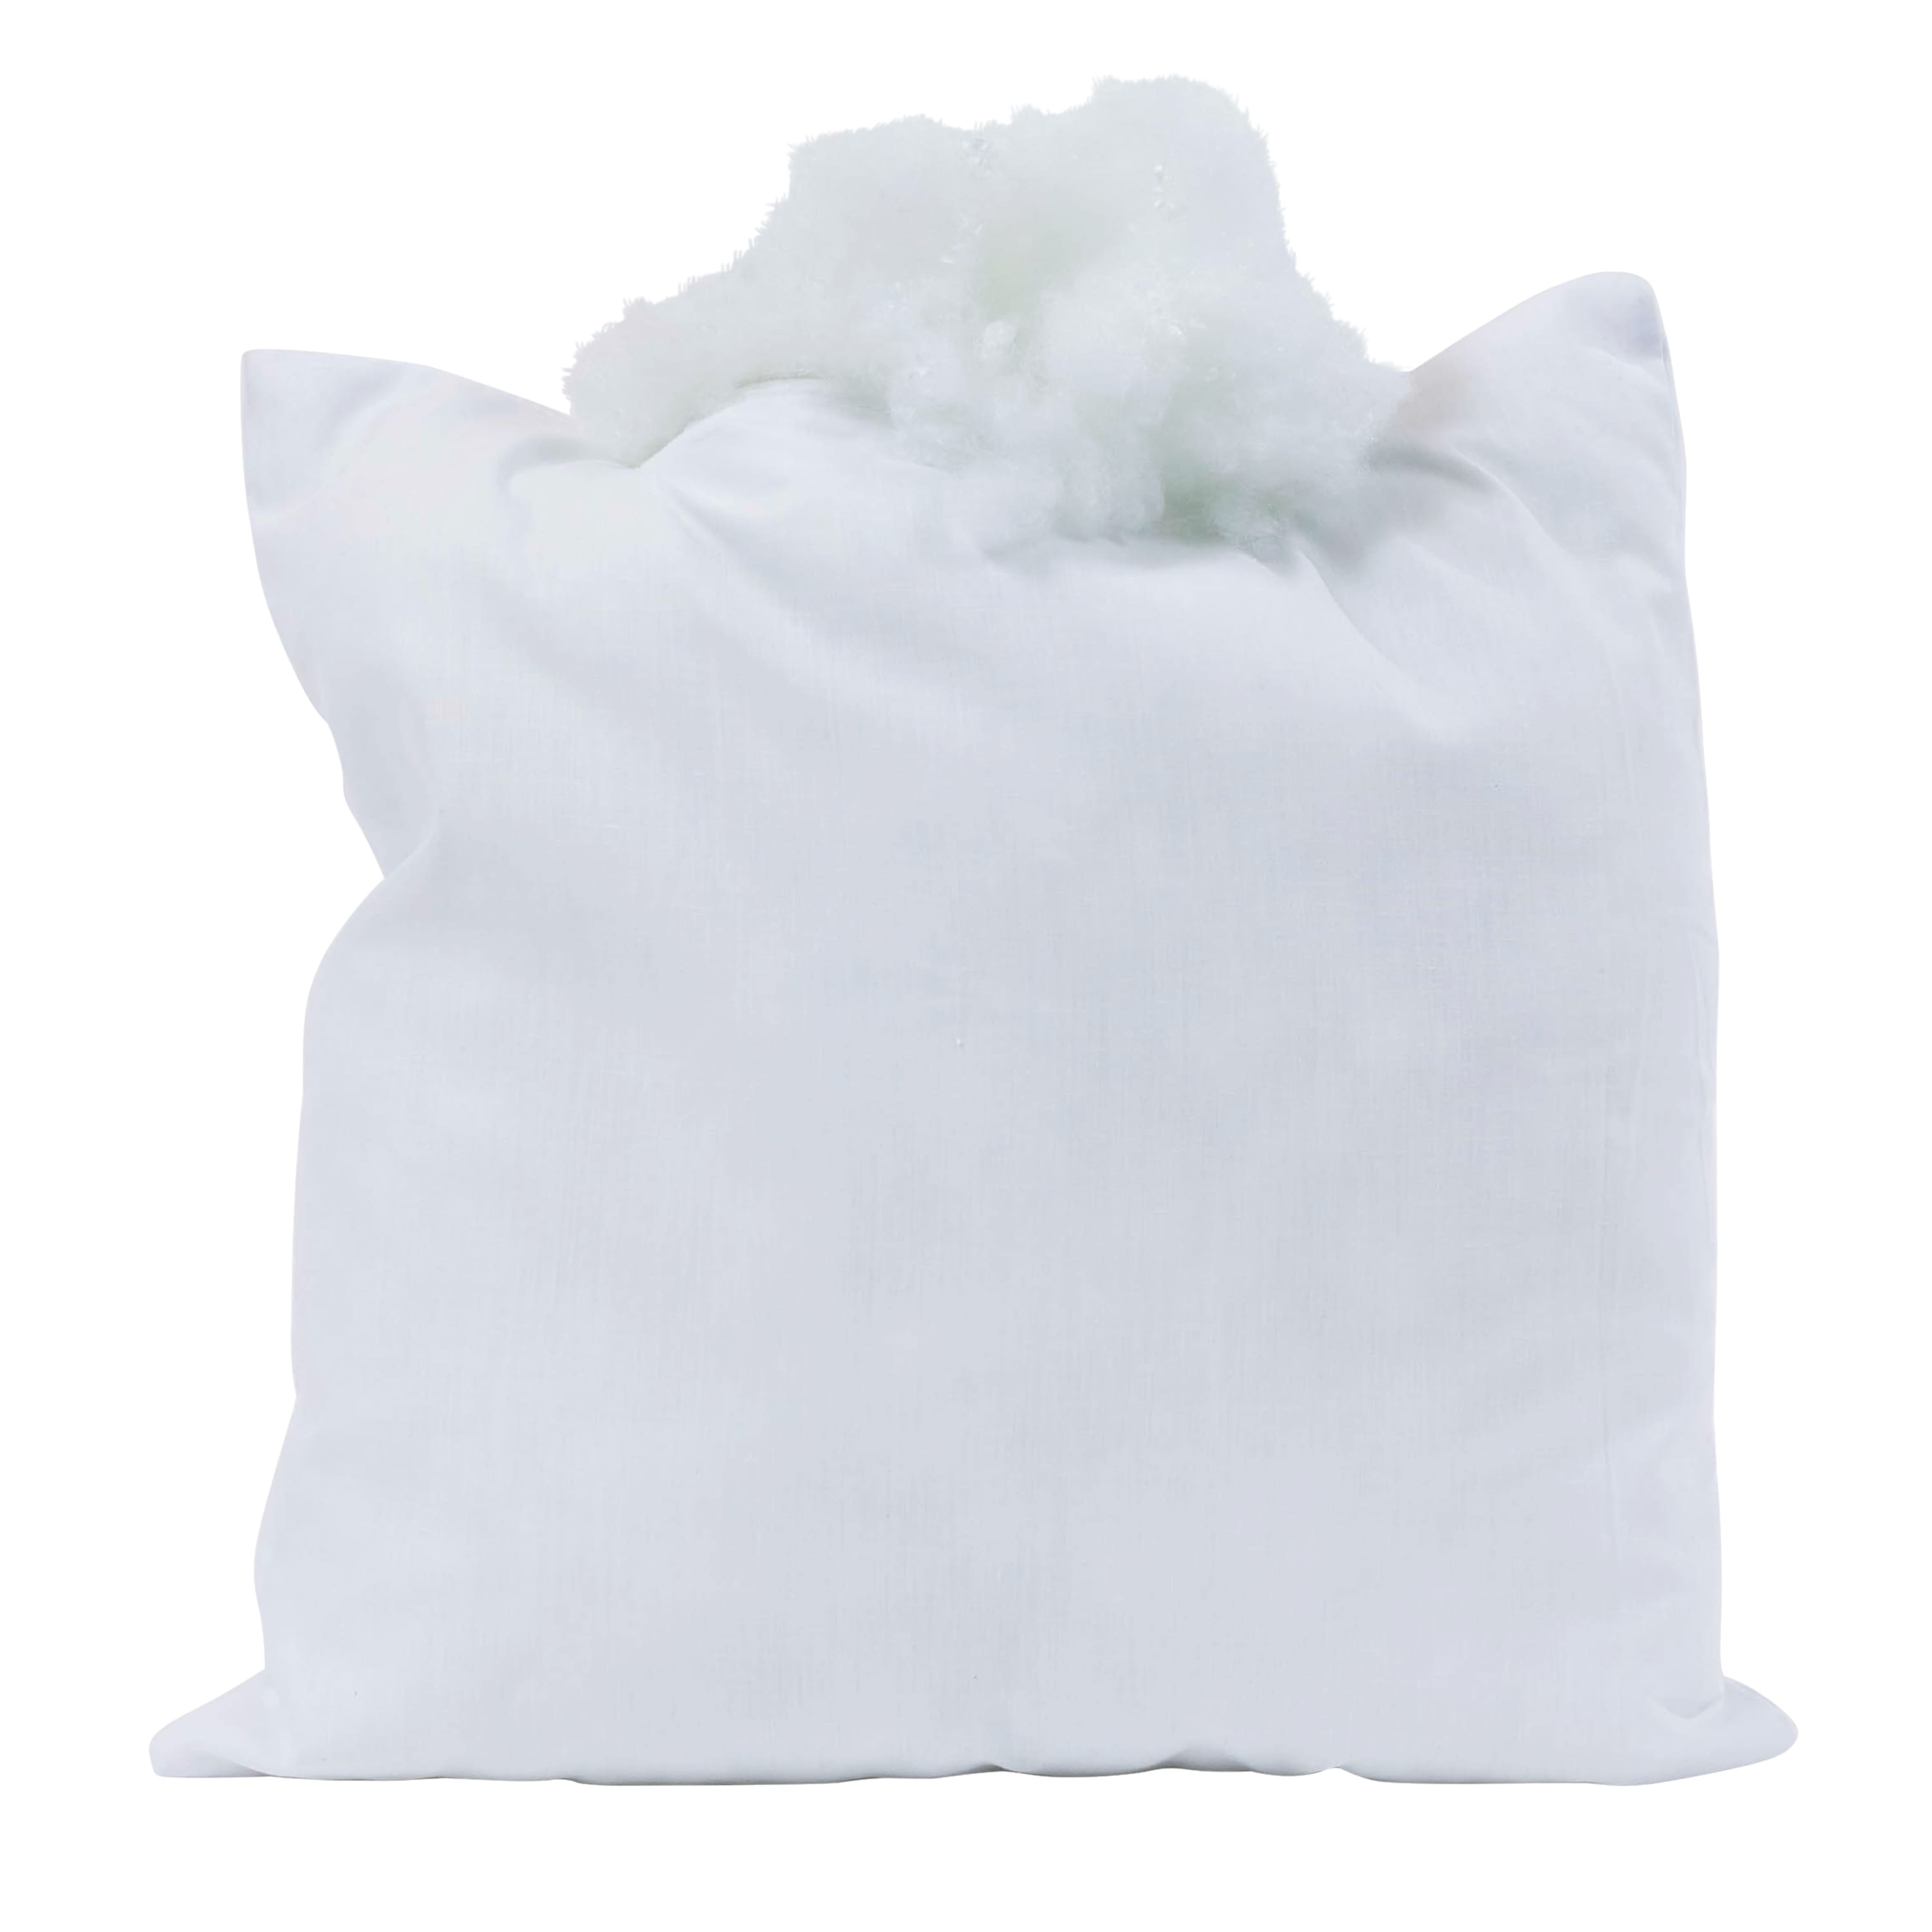 Poly-Fil&#xAE; Premier&#x2122; Ultra Plush Pillow Insert, 18&#x22; x 18&#x22;